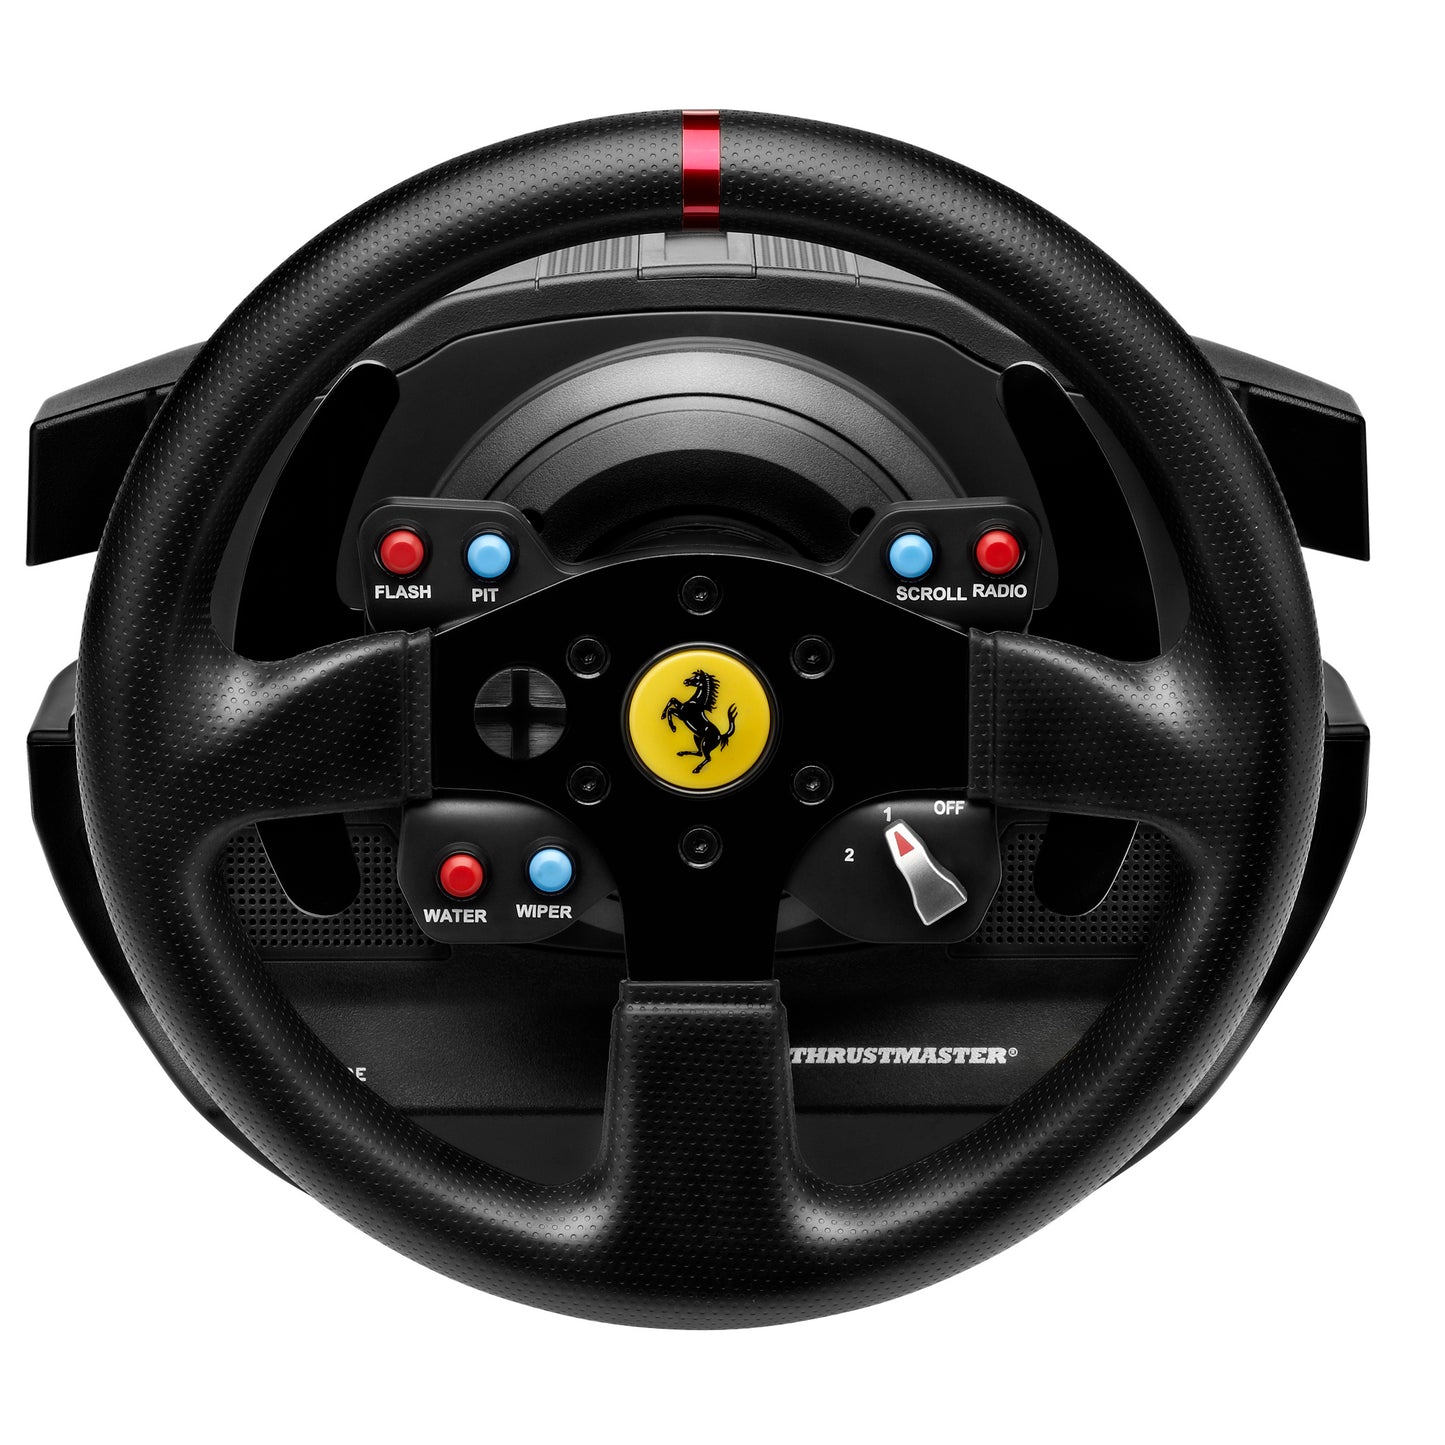 Ferrari GTE Wheel Add-on – Lenker-Replik des Ferrari 458 Challenge